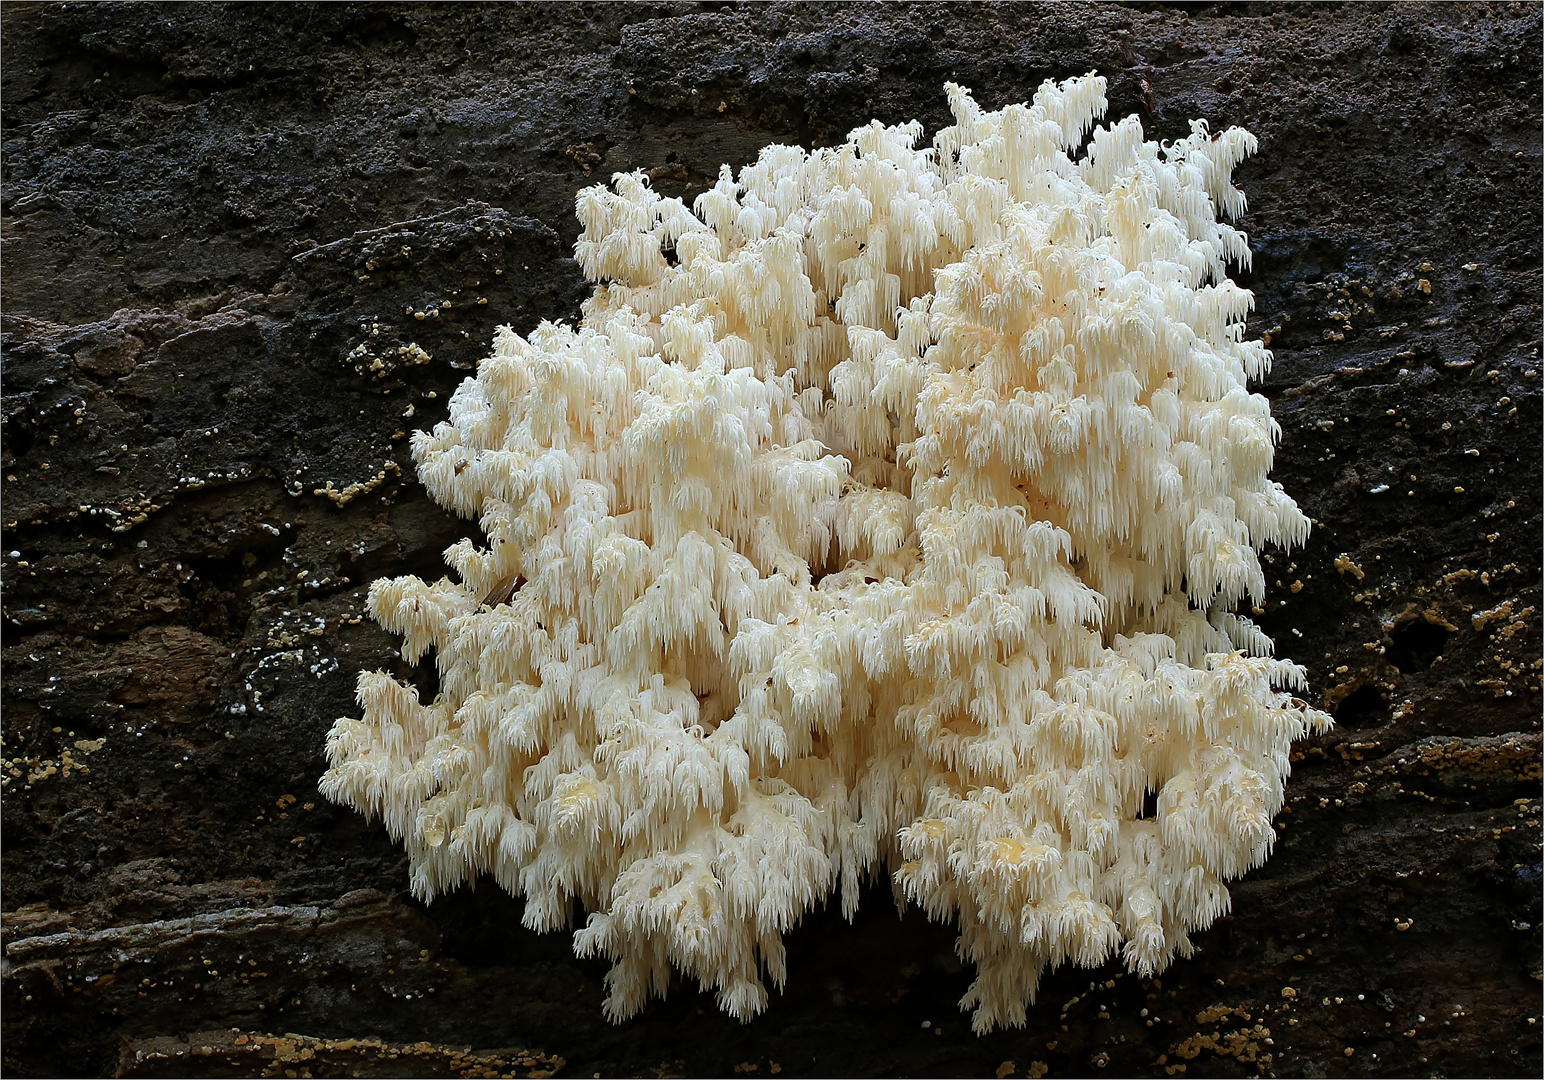 Ästiger Stachelbart (Hericium coralloides)